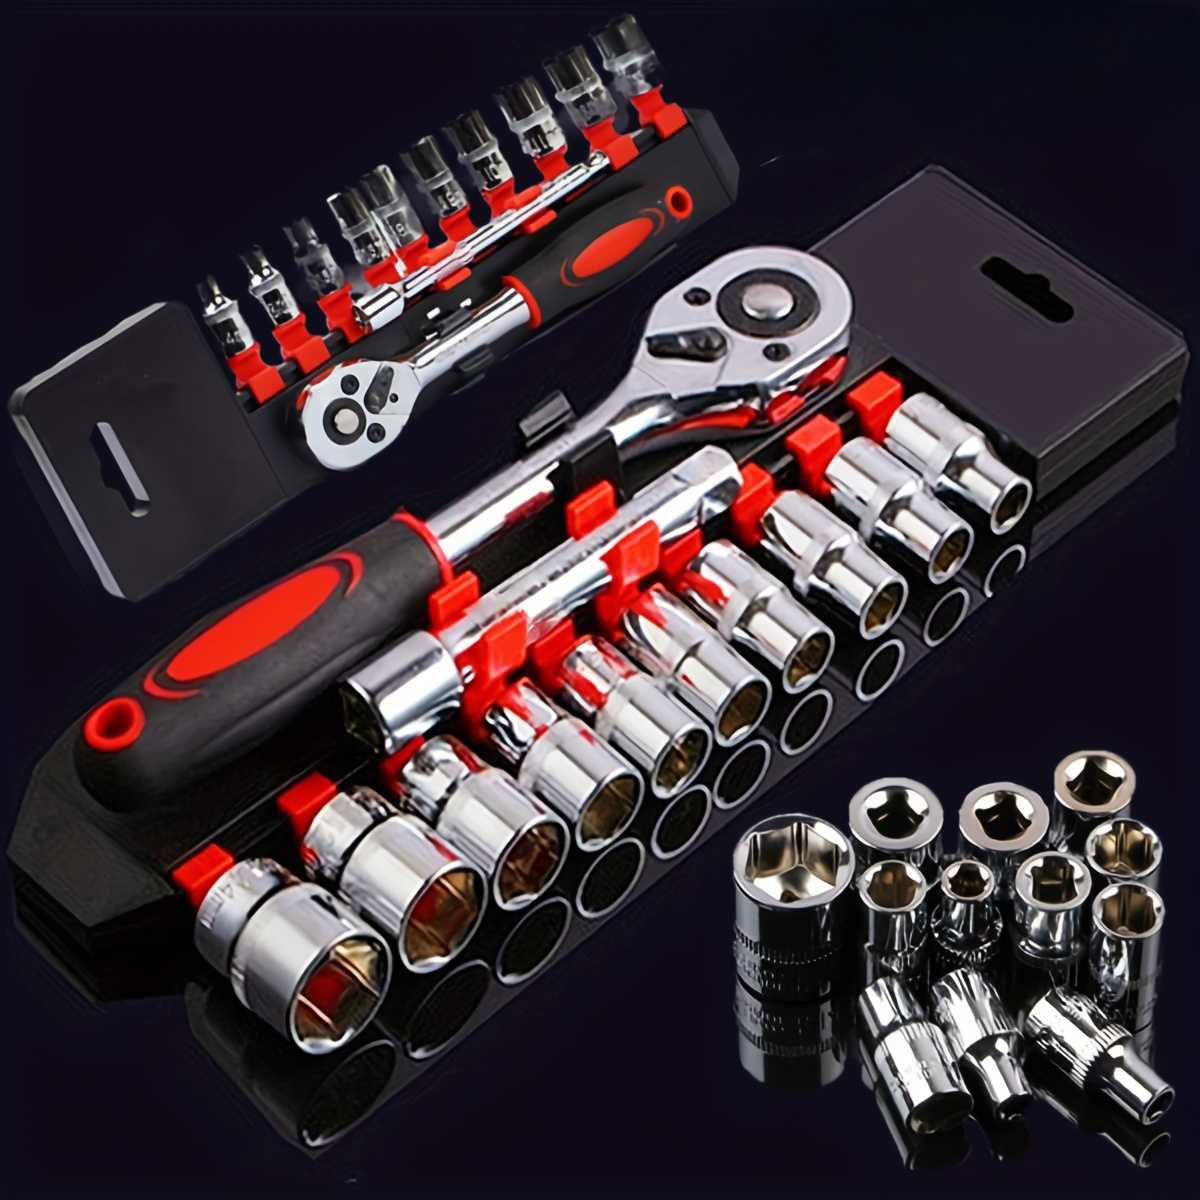 Schraubenschlüssel Werkzeug Set - Kostenloser Versand Für Neue